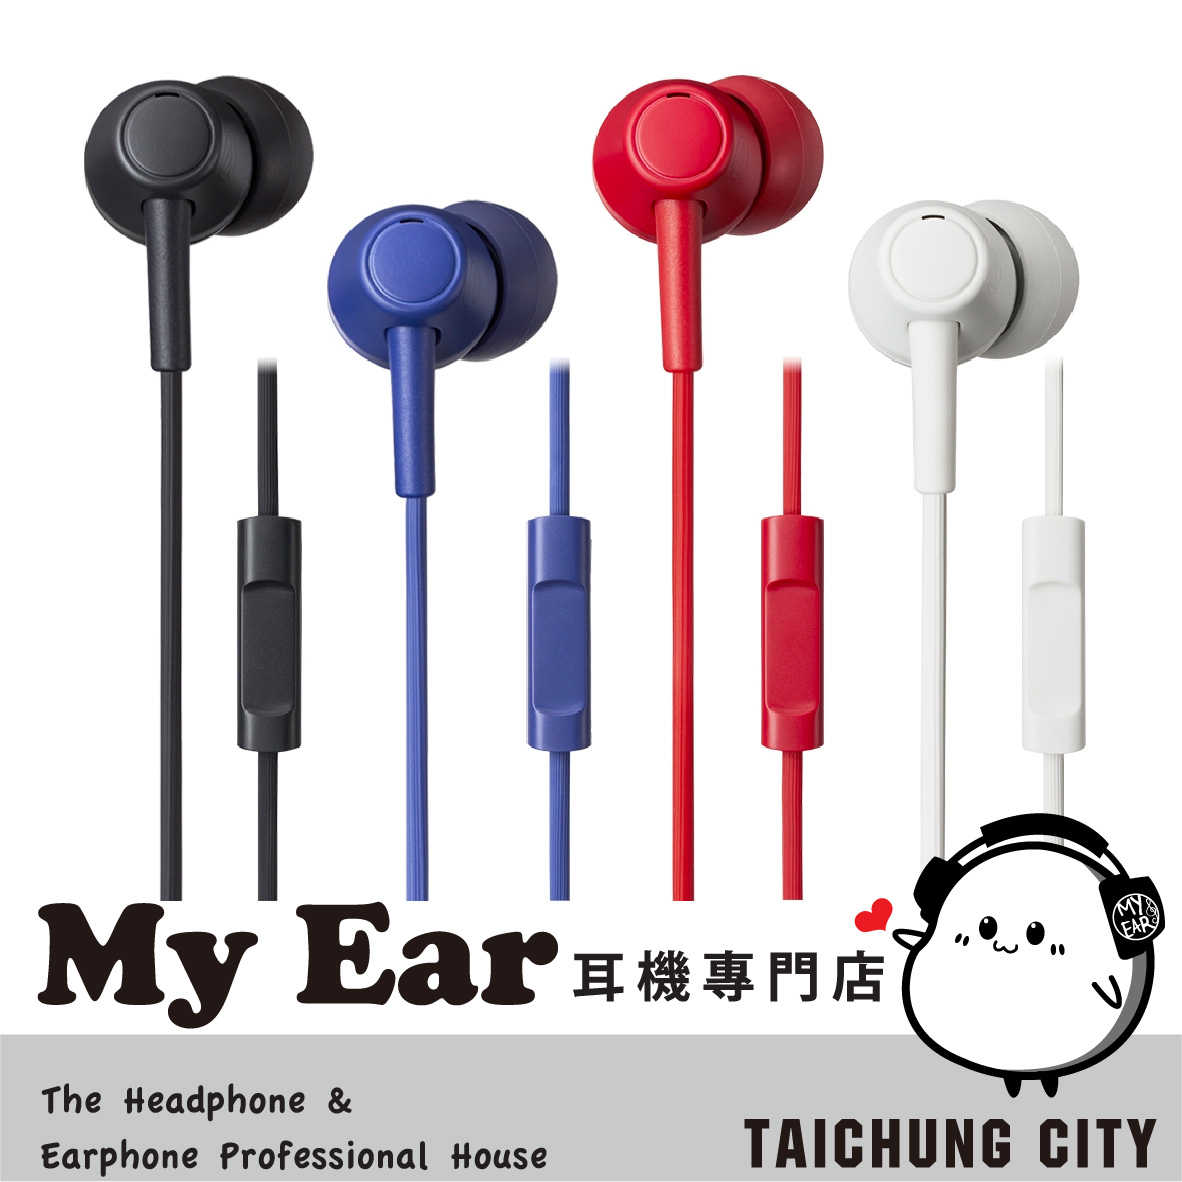 鐵三角 ATH-CK350Xis 耳機麥克風 多色可選 ATH-CK350X | My Ear 耳機專門店